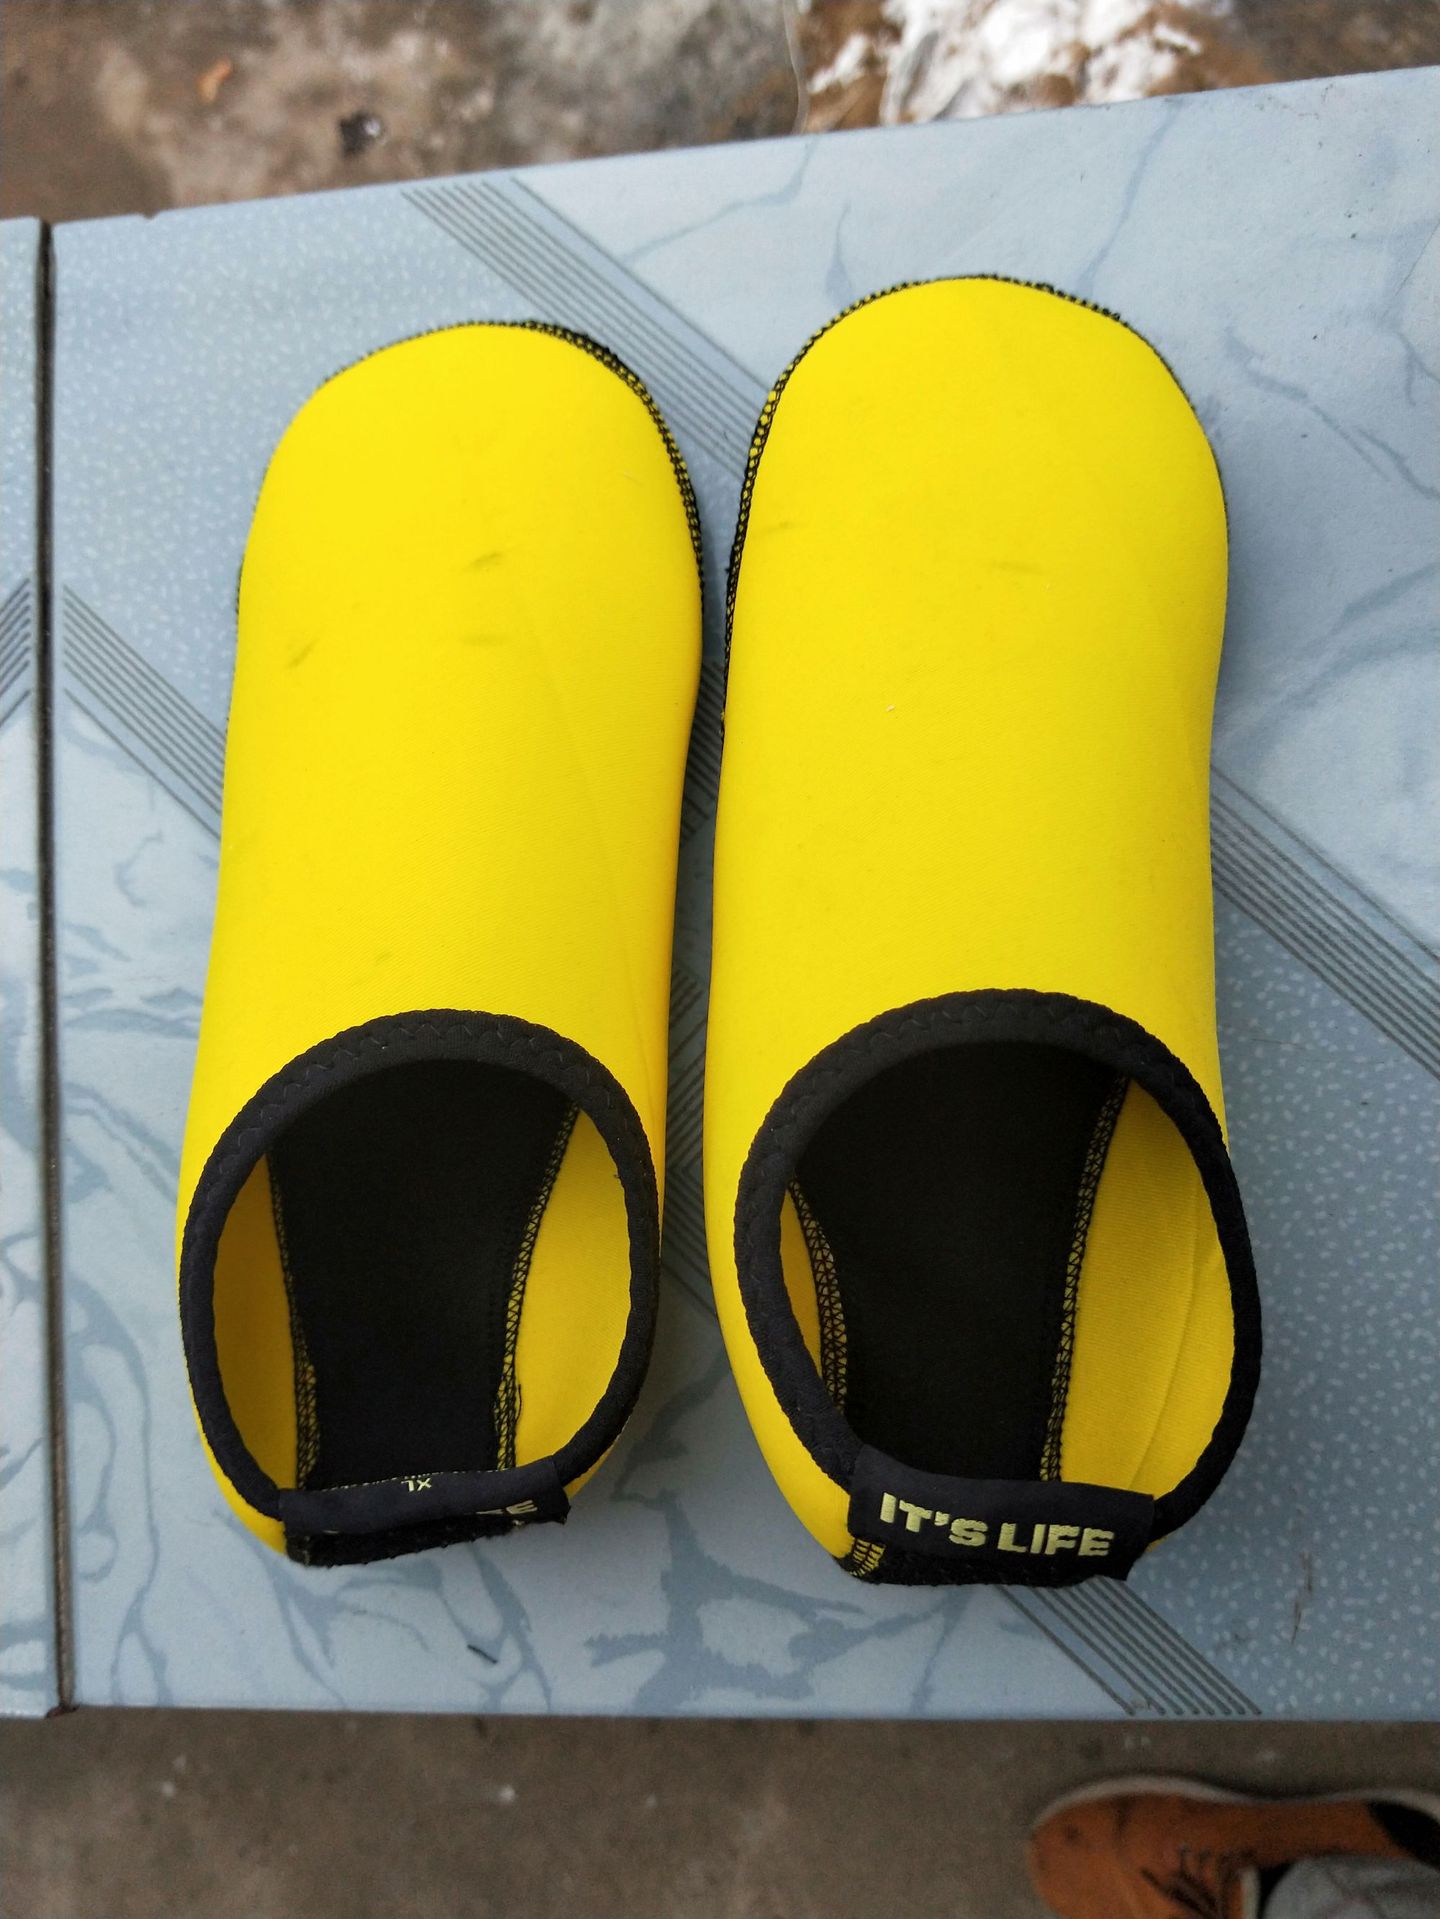 工厂新款沙滩袜浮潜鞋套装备通用游泳潜水袜浮潜袜游泳袜套防滑